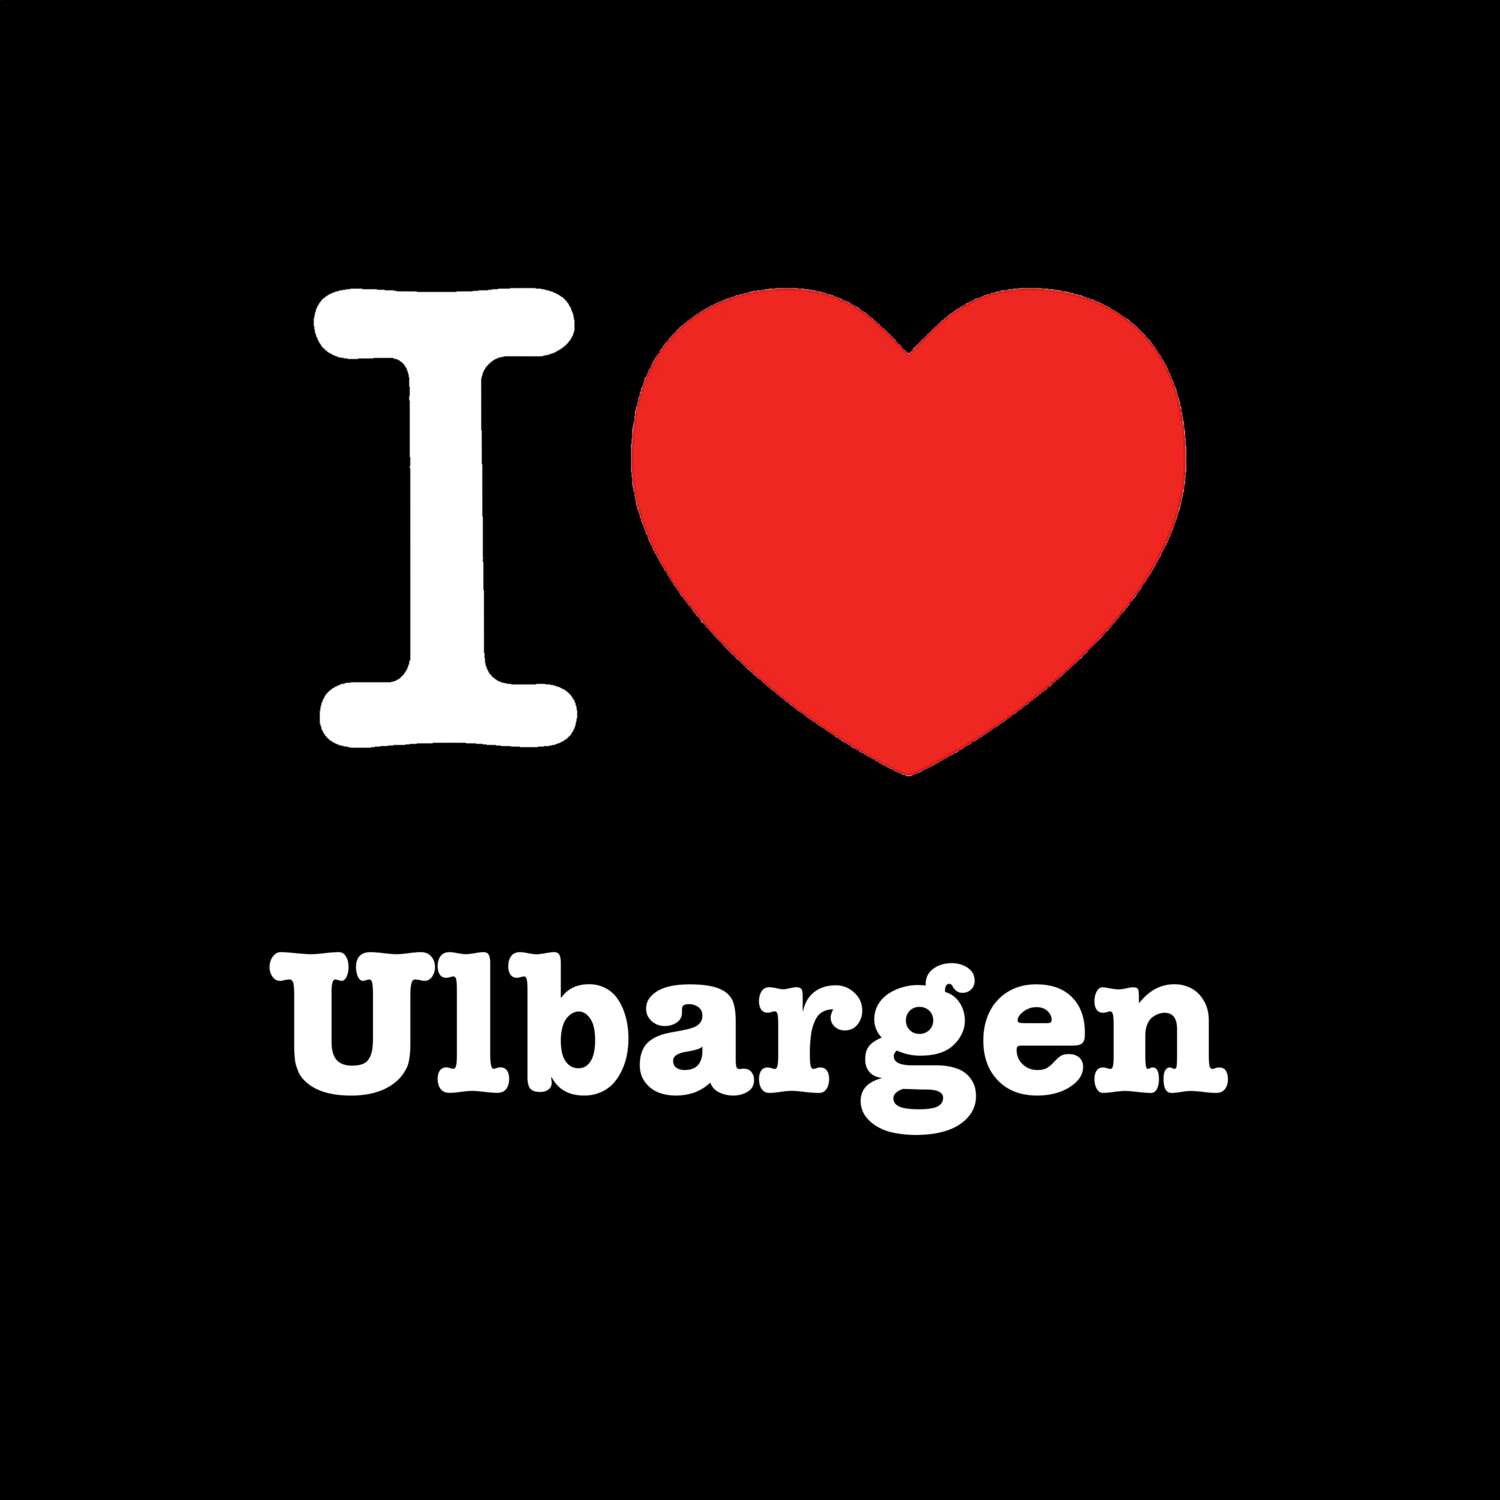 Ulbargen T-Shirt »I love«